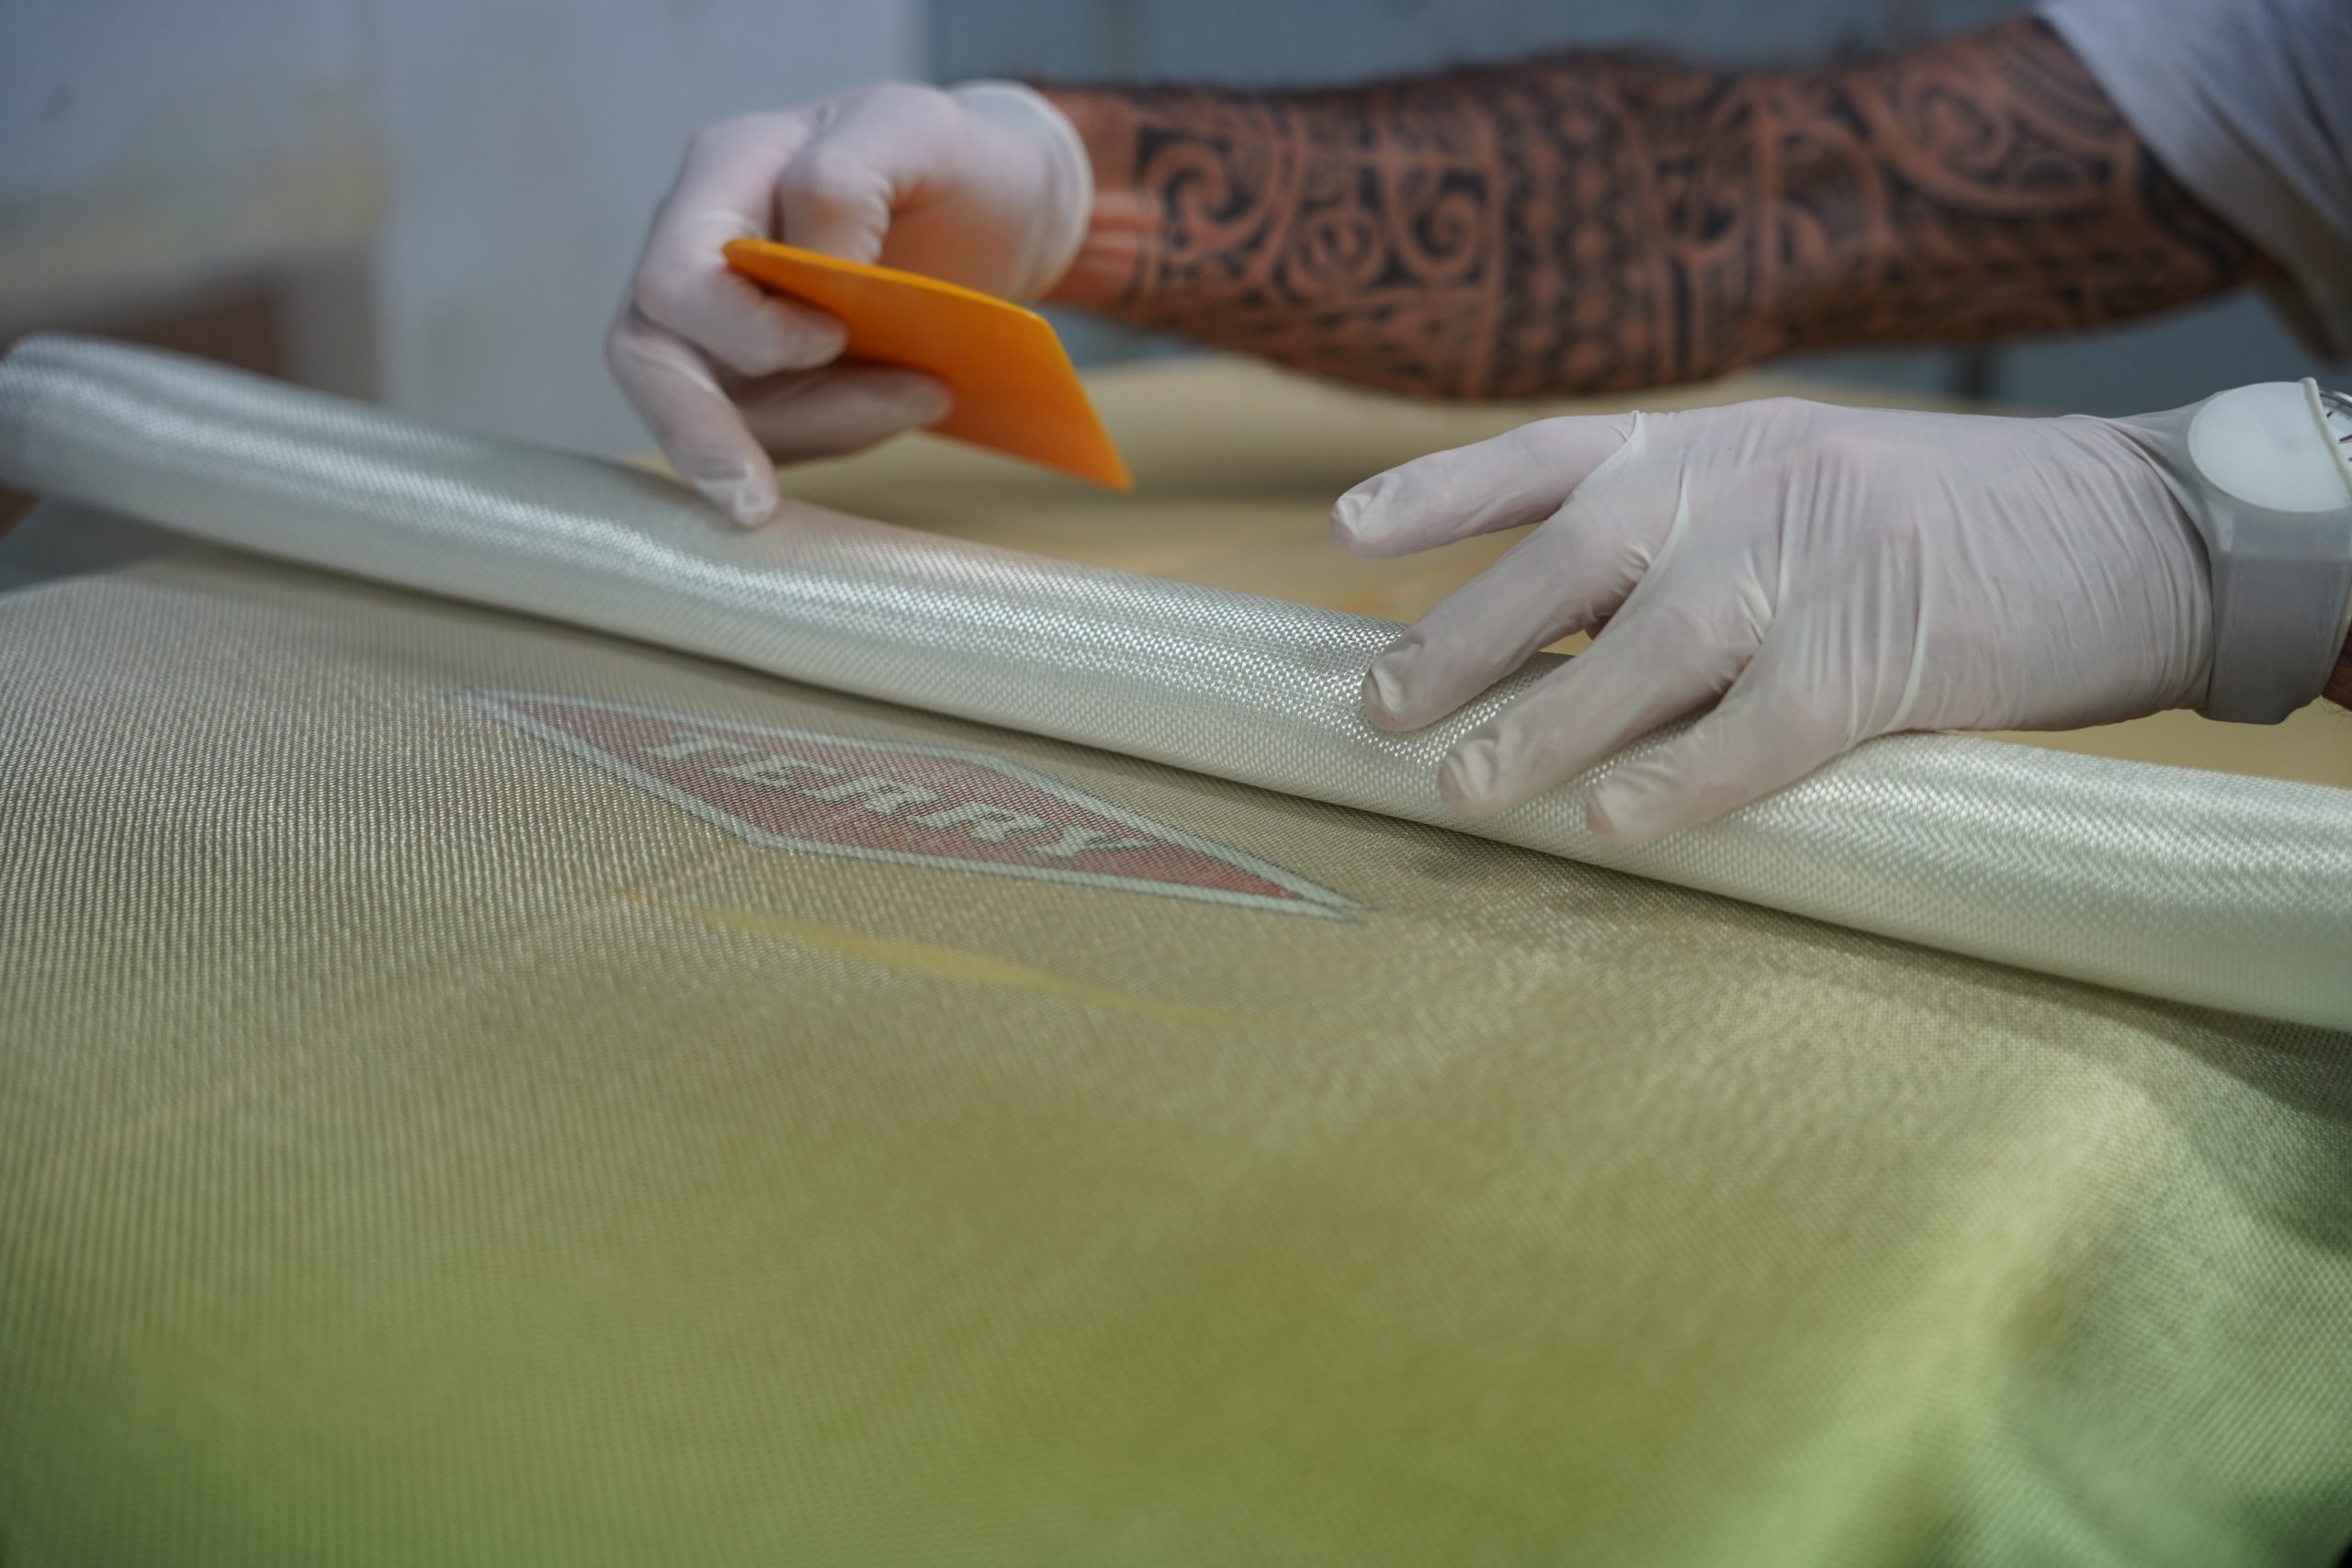 rolling fiber mat over the surfboard and insert sticker or art work below it